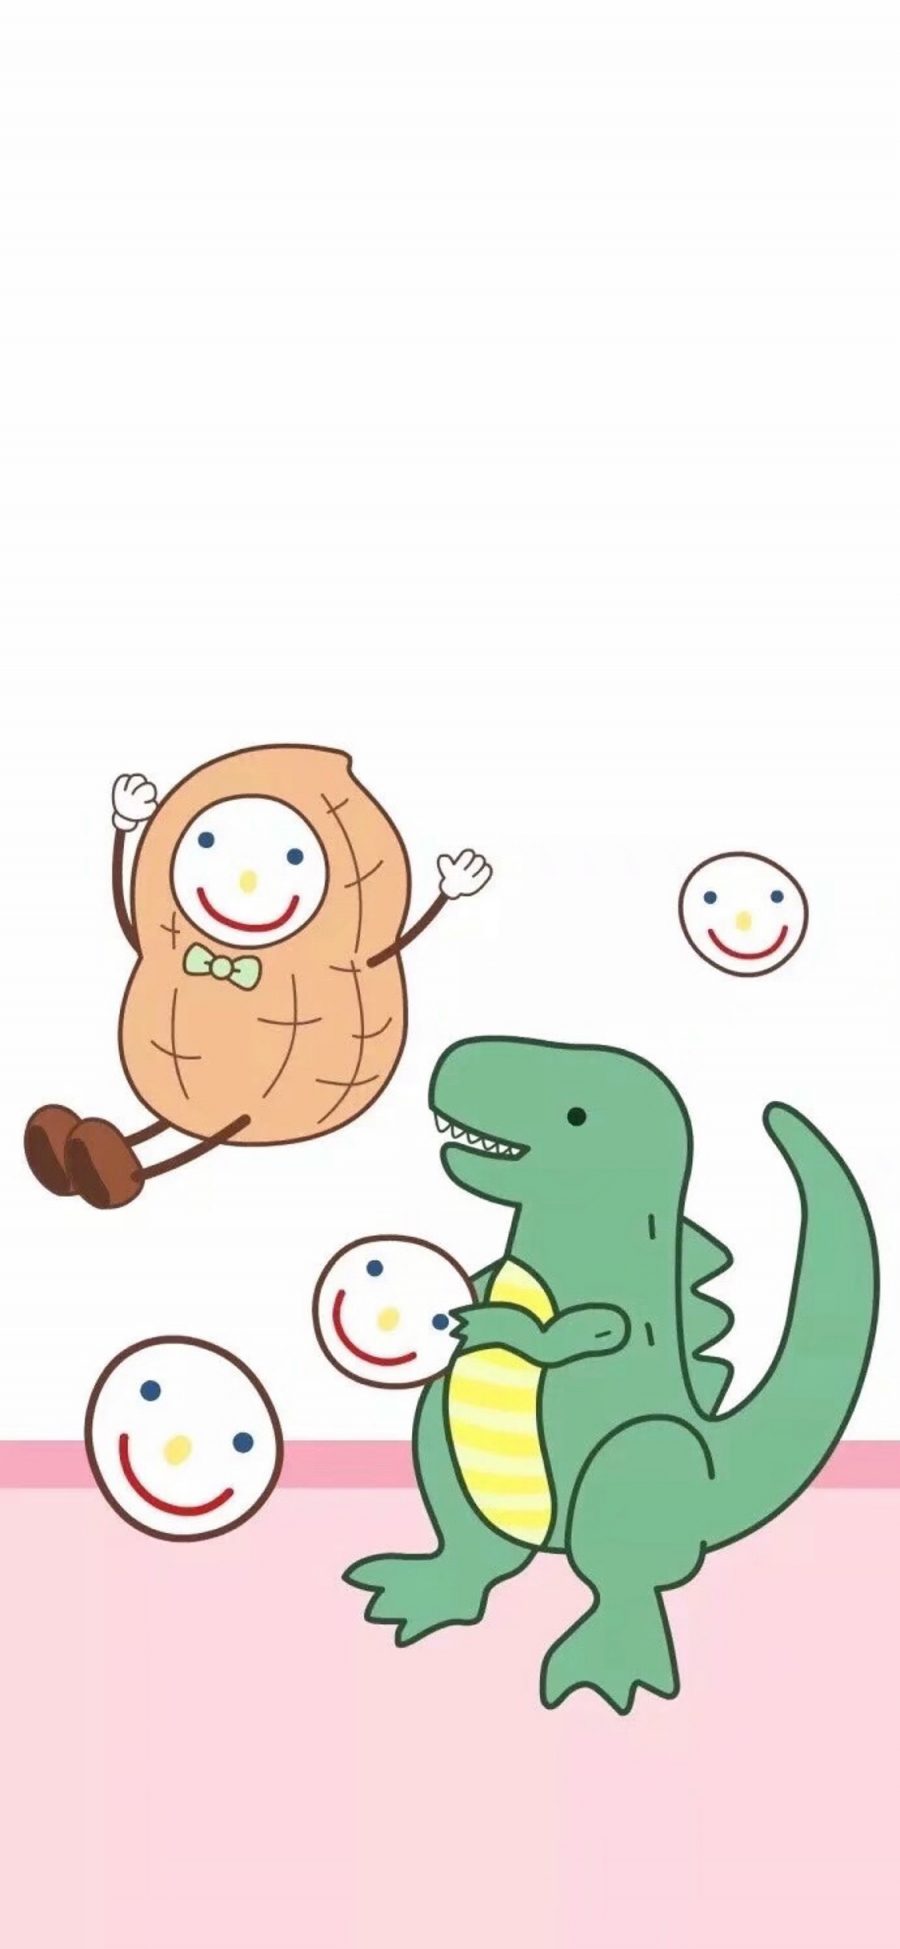 [2436×1125]卡通 萌物 恐龙 花生 笑脸 苹果手机动漫壁纸图片